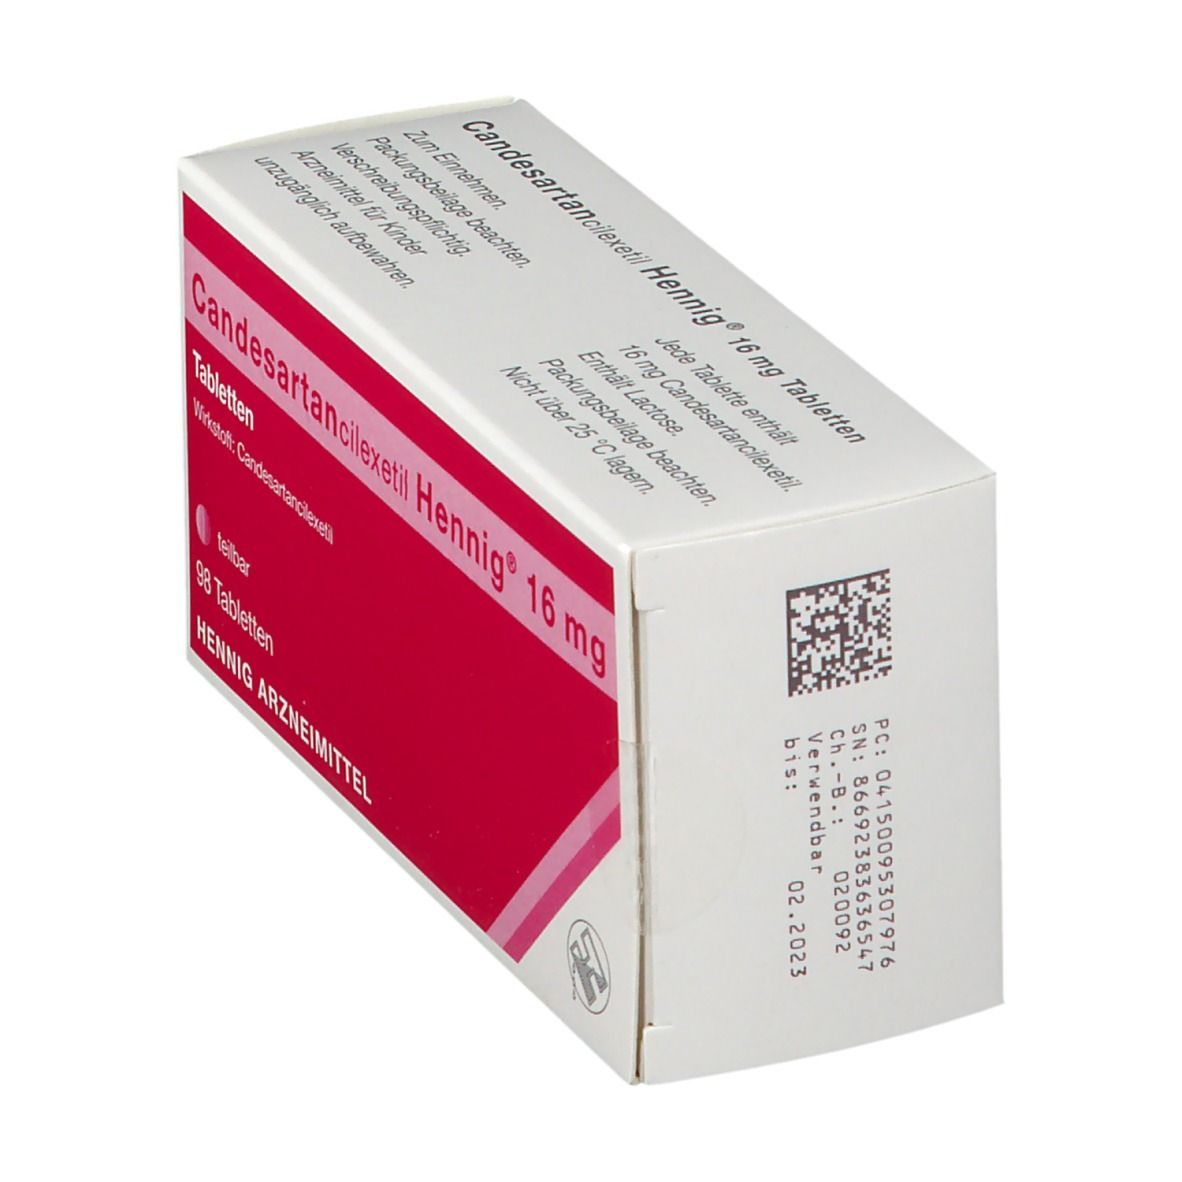 Candesartancilexetil Hennig® 16 mg